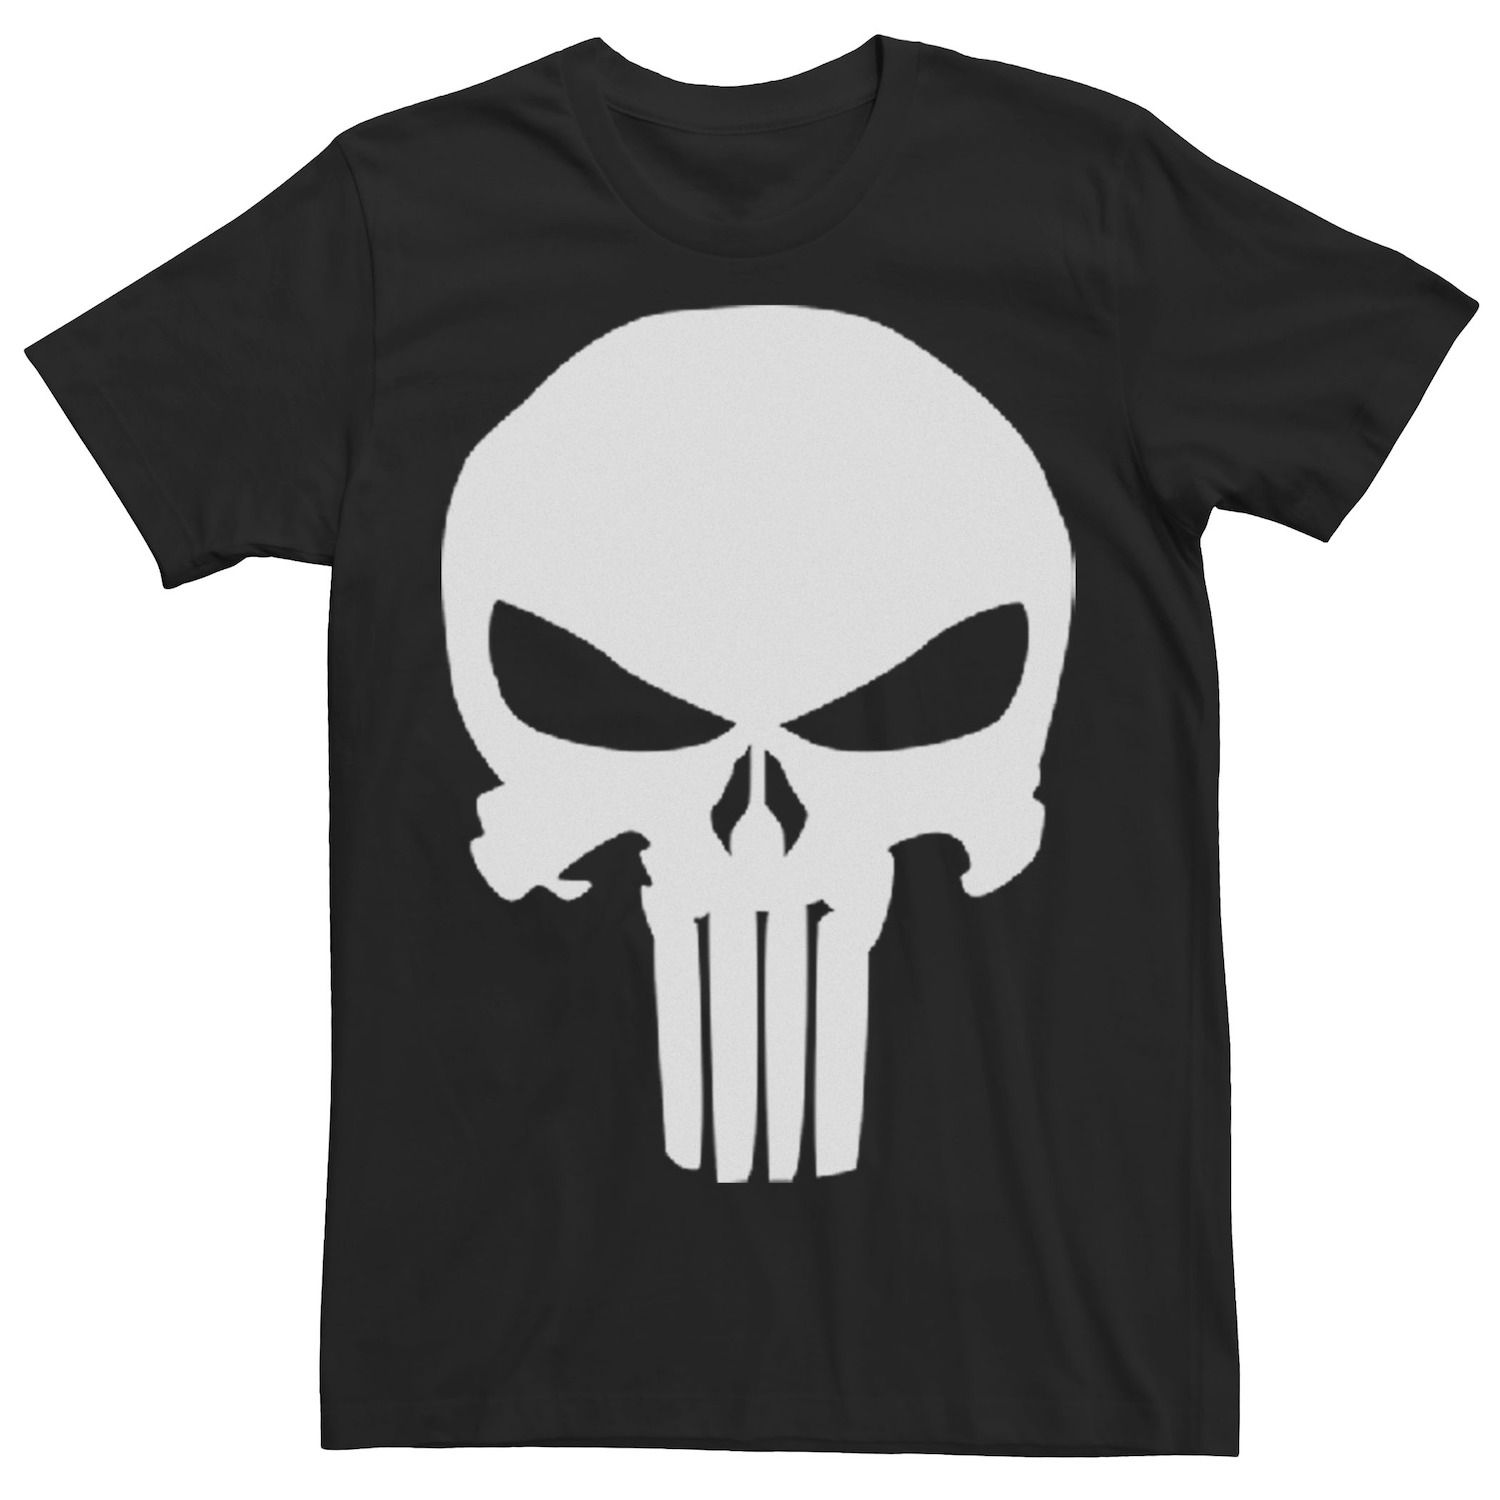 Мужская классическая футболка Punisher с символом черепа Marvel футболка мужская marvel punisher s